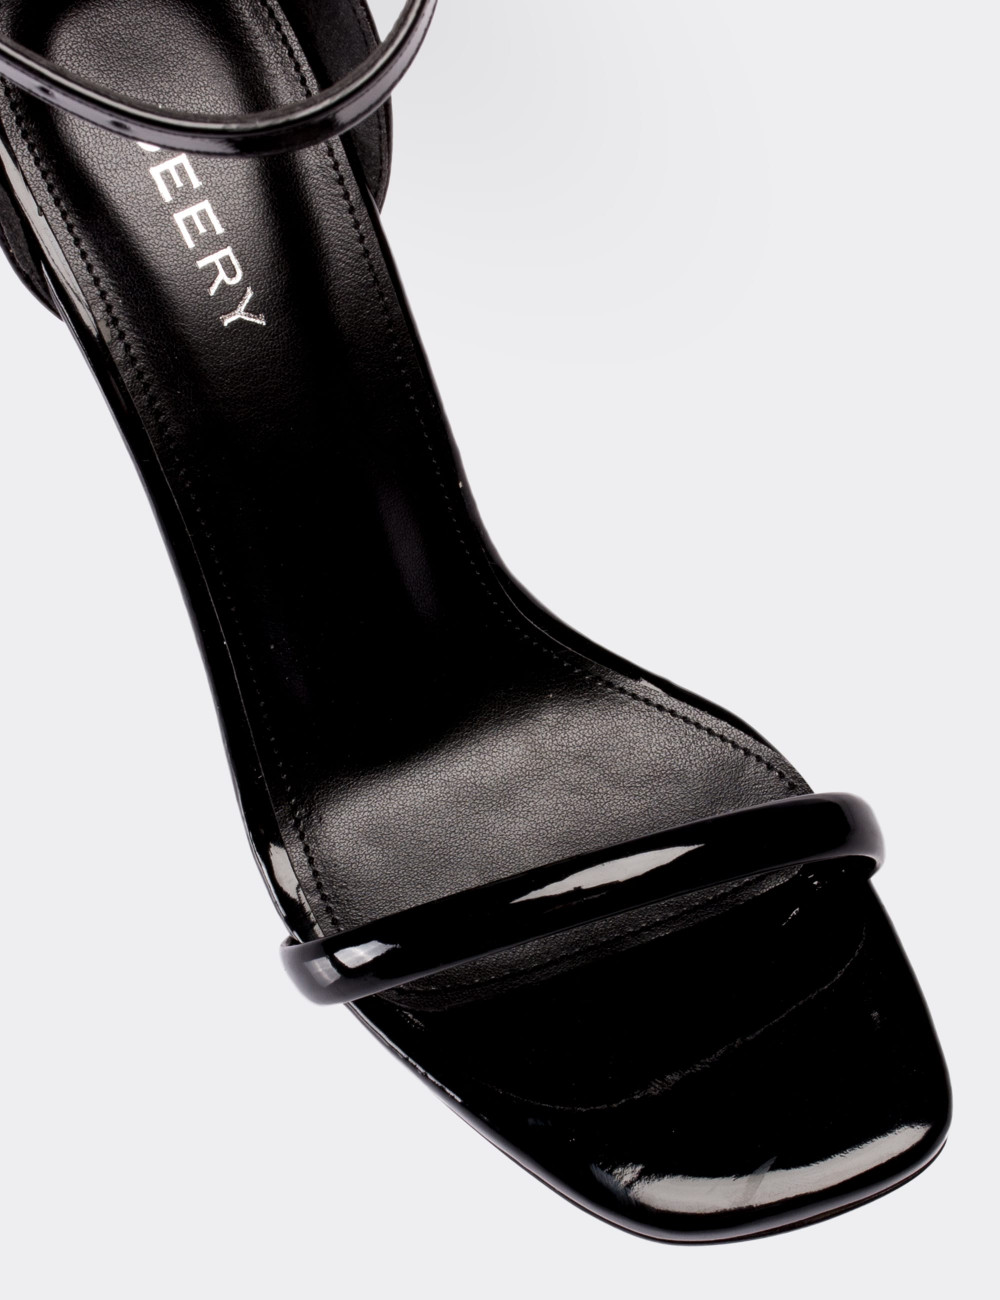 Siyah Topuklu Kadın Ayakkabı - C0232ZSYHM01